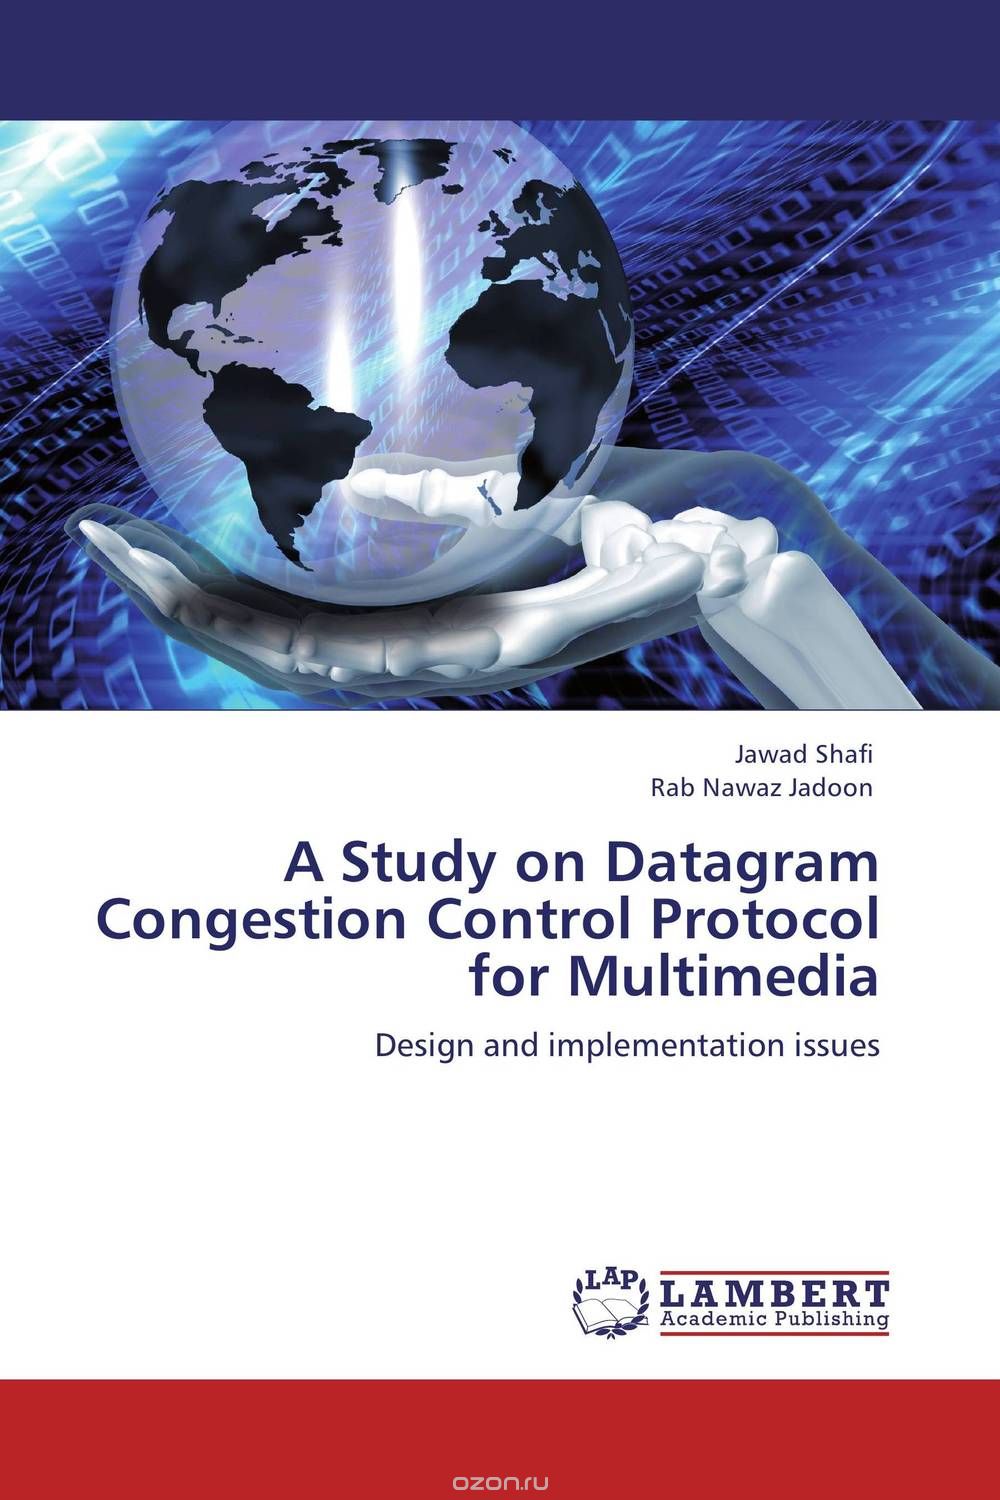 Скачать книгу "A Study on Datagram Congestion Control Protocol for Multimedia"